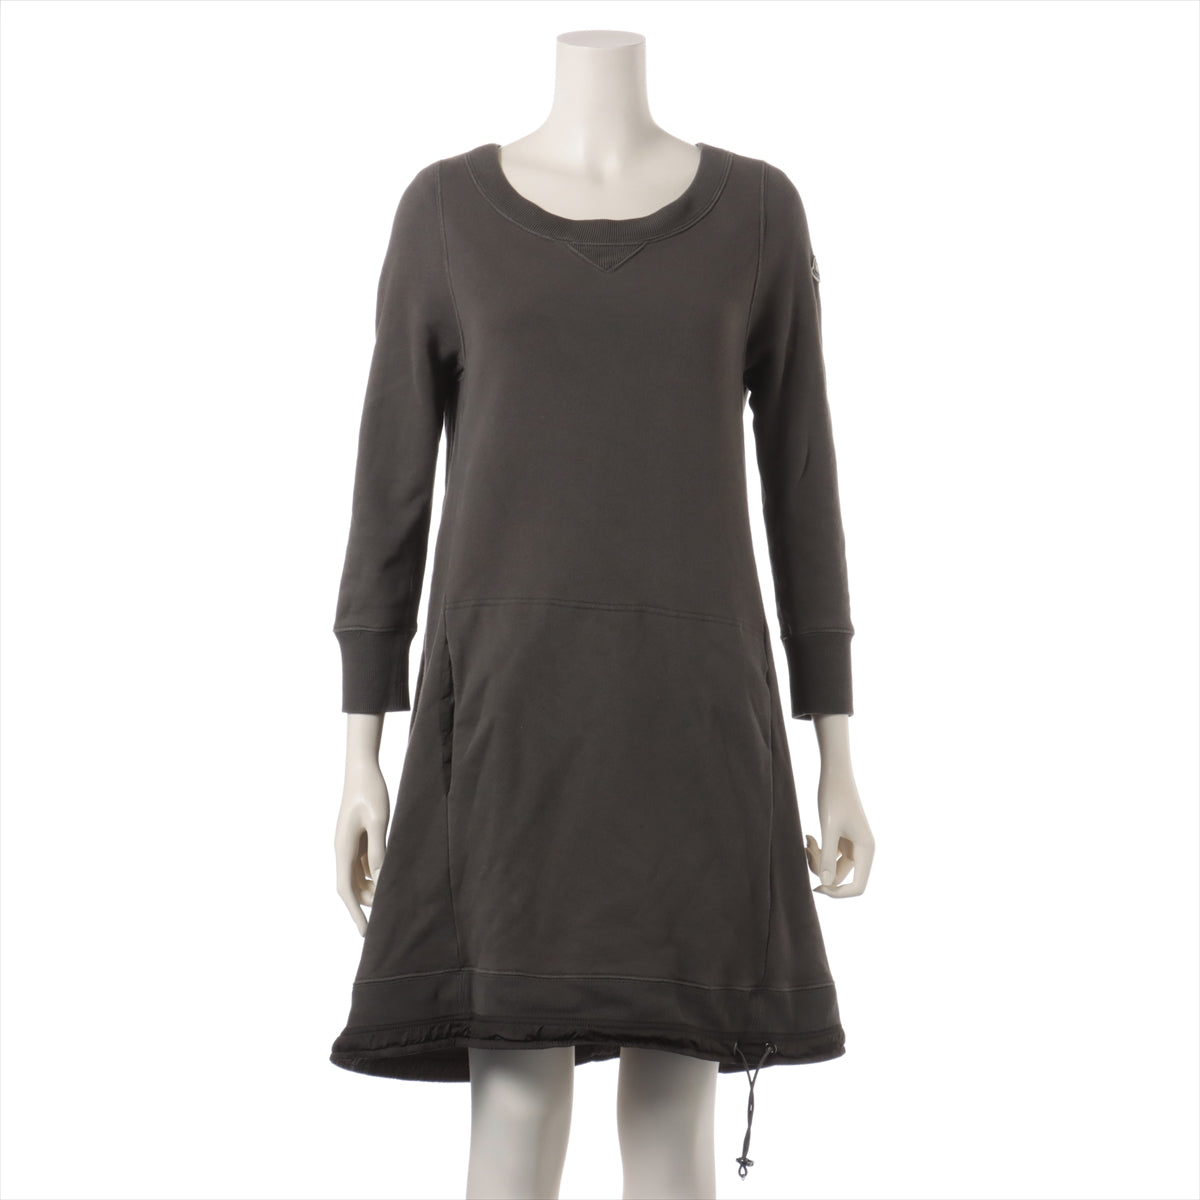 Moncler 14 years Cotton & nylon Dress S Ladies' Khaki  420938096300